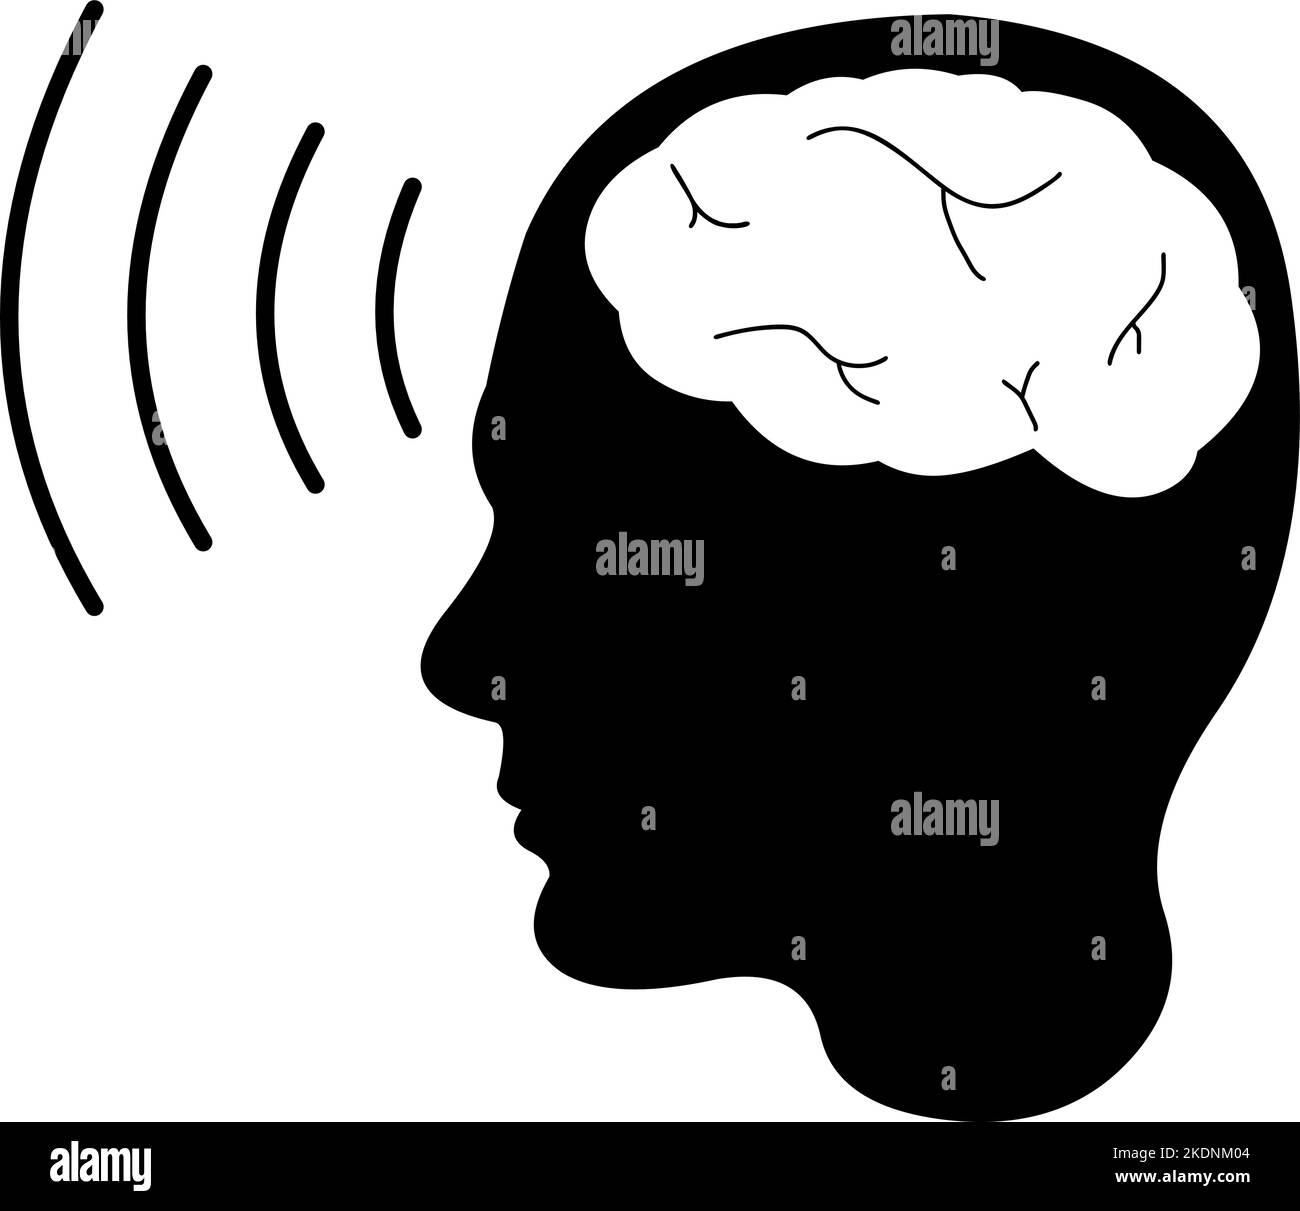 Illustration vectorielle de la silhouette noire d'une personne avec des ondes cérébrales, dans le concept de télépathie Illustration de Vecteur